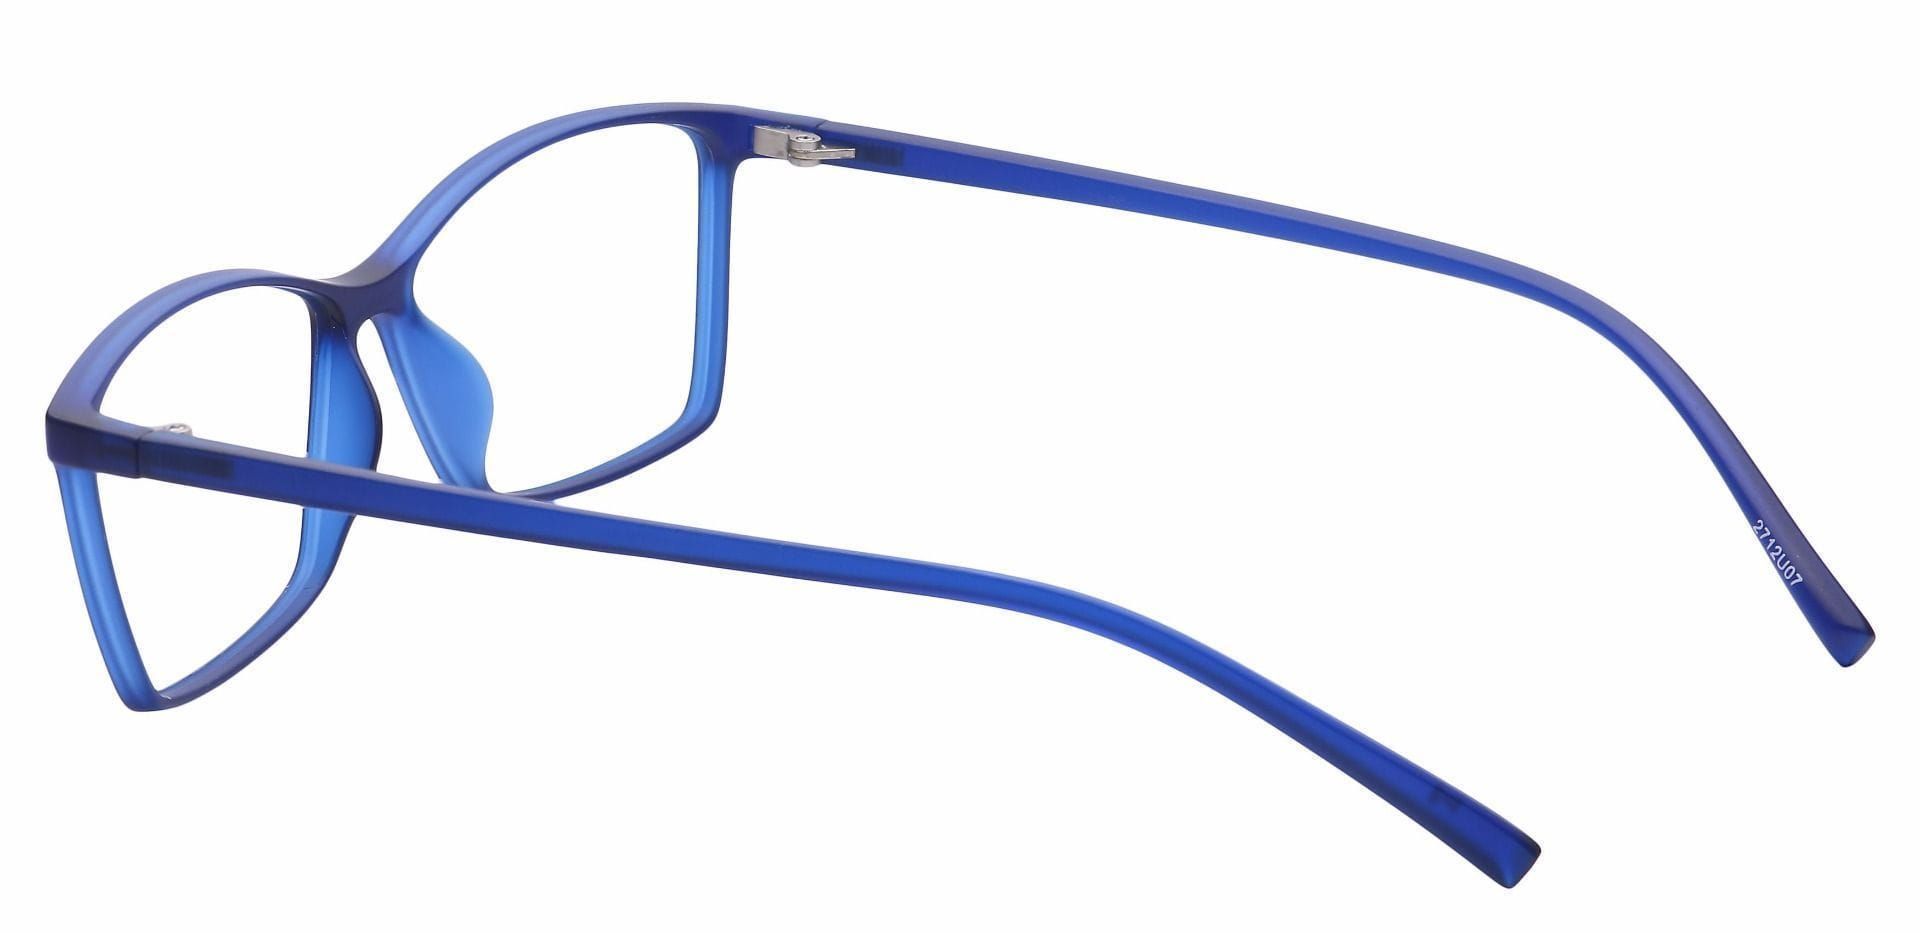 Align Rectangle Reading Glasses - Blue